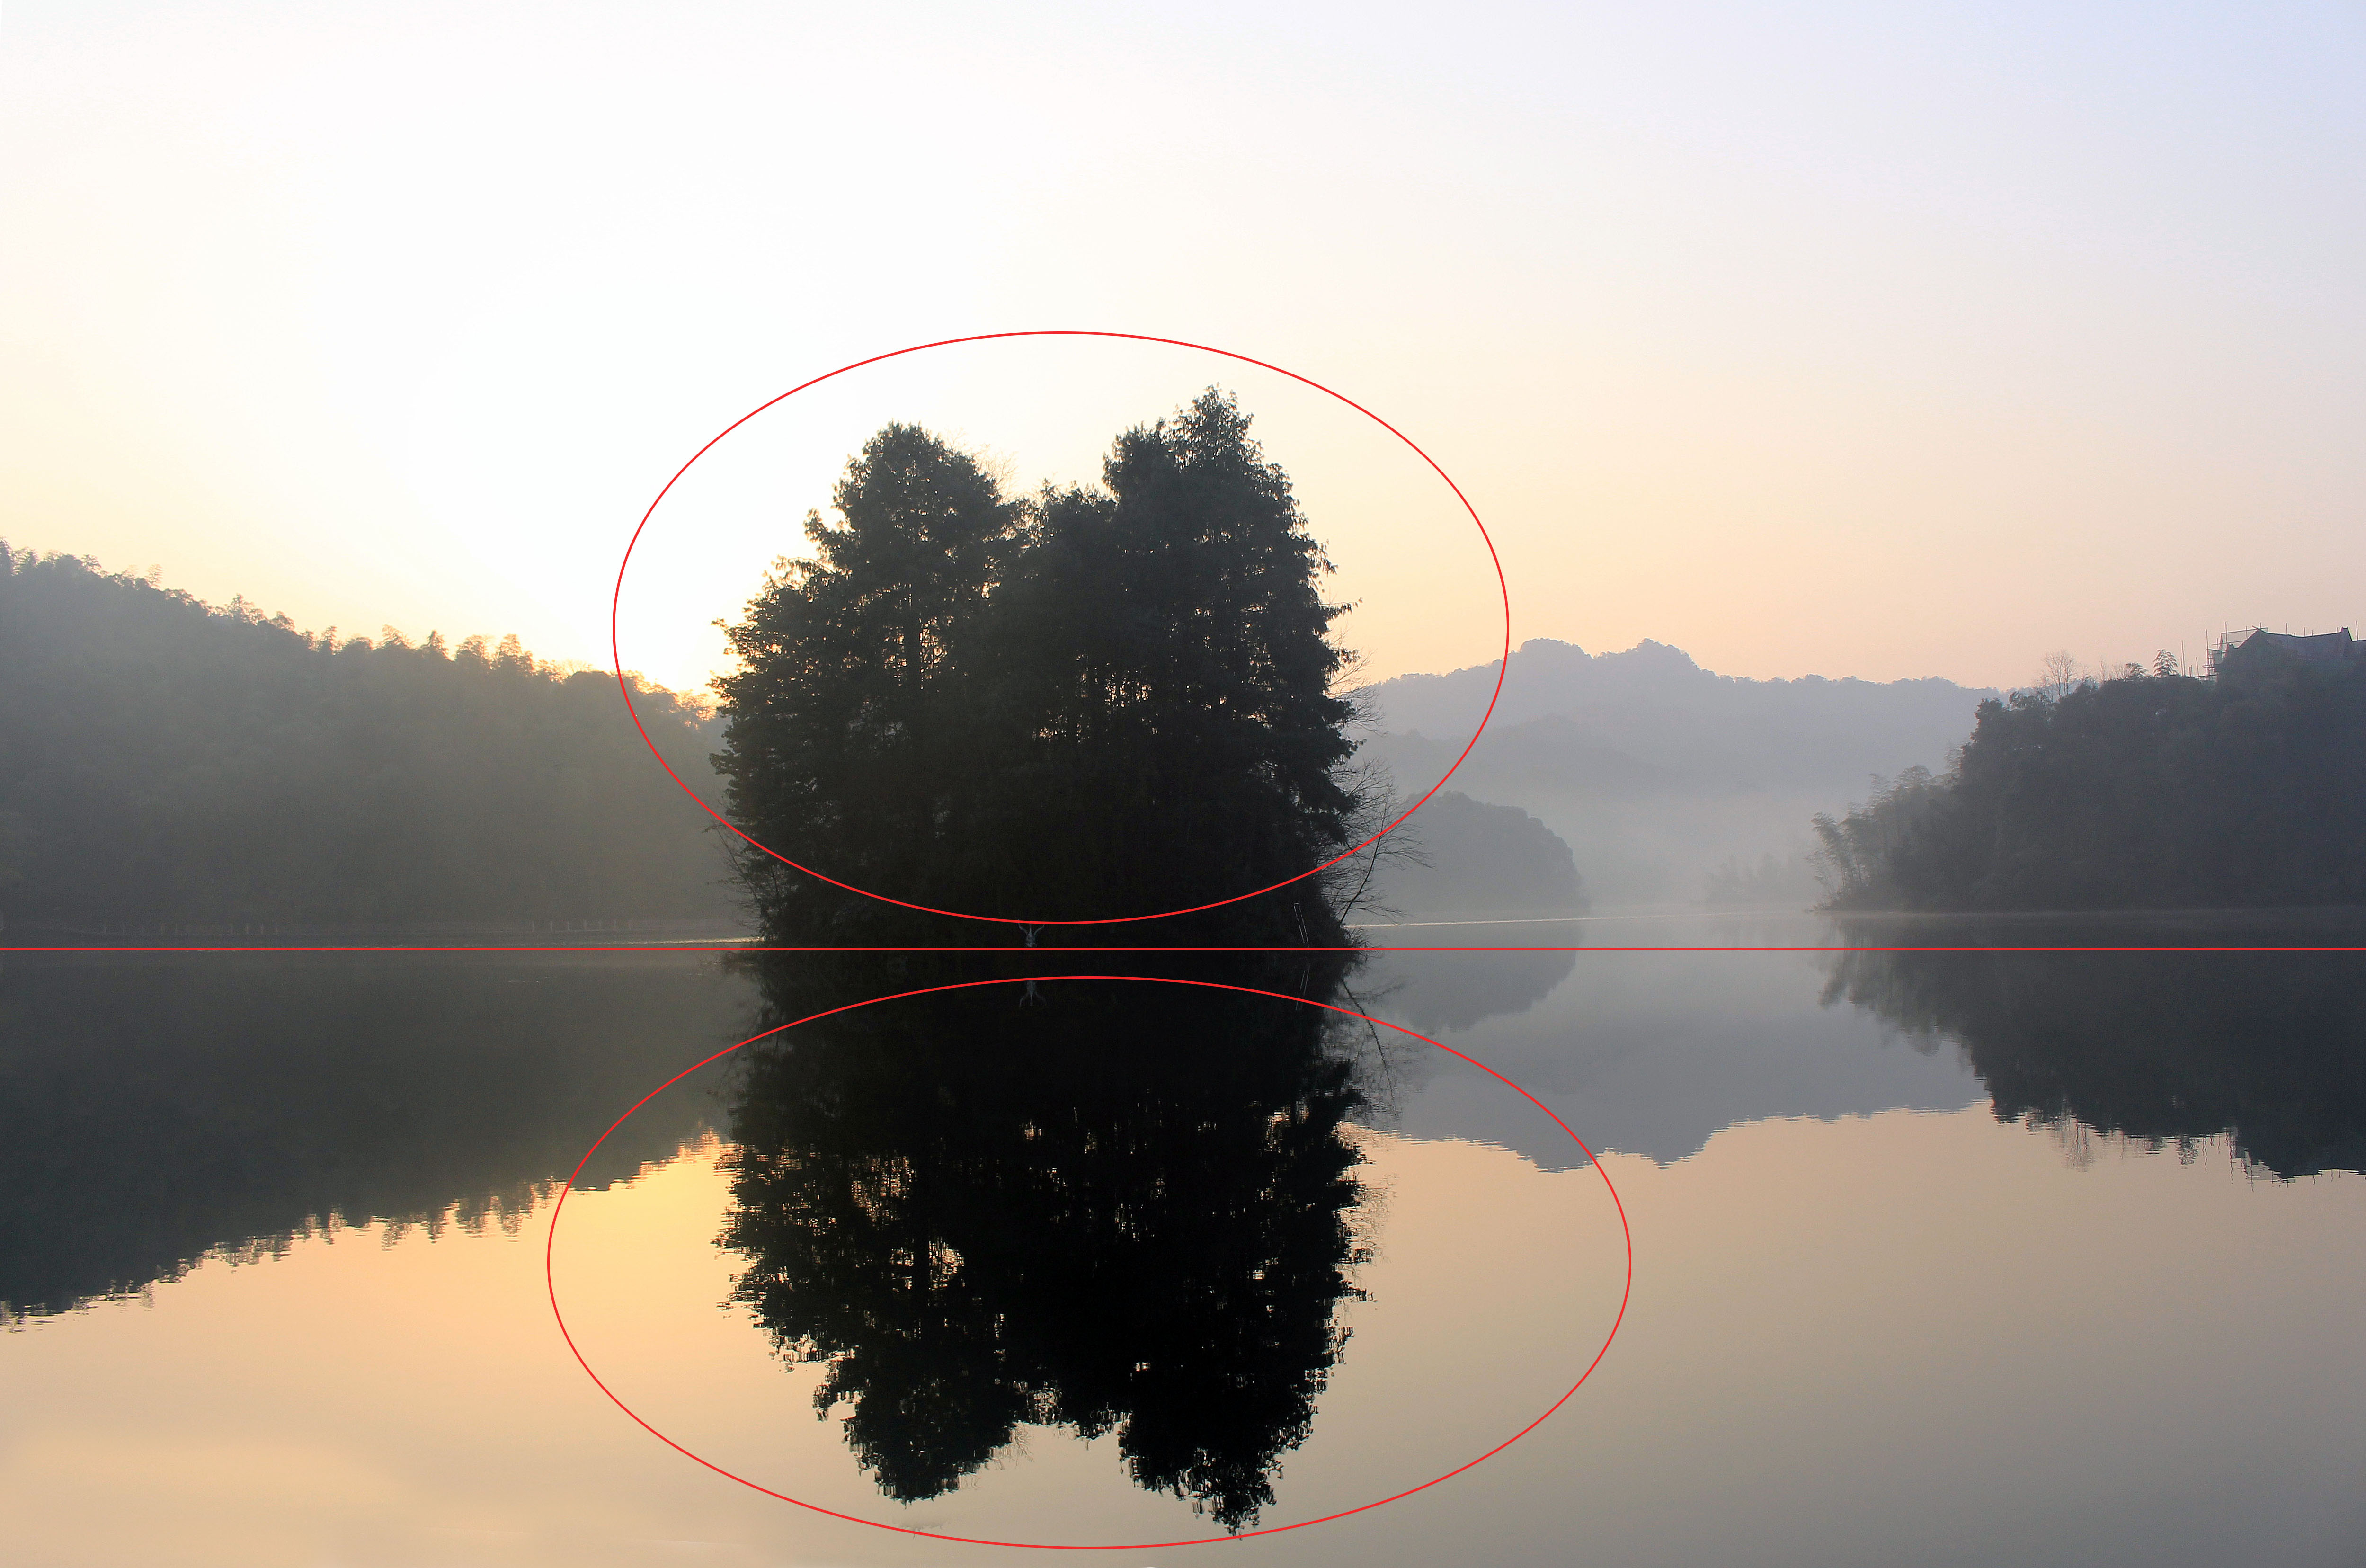 天岛湖摄影构图技巧篇:小白的逆袭-搜狐